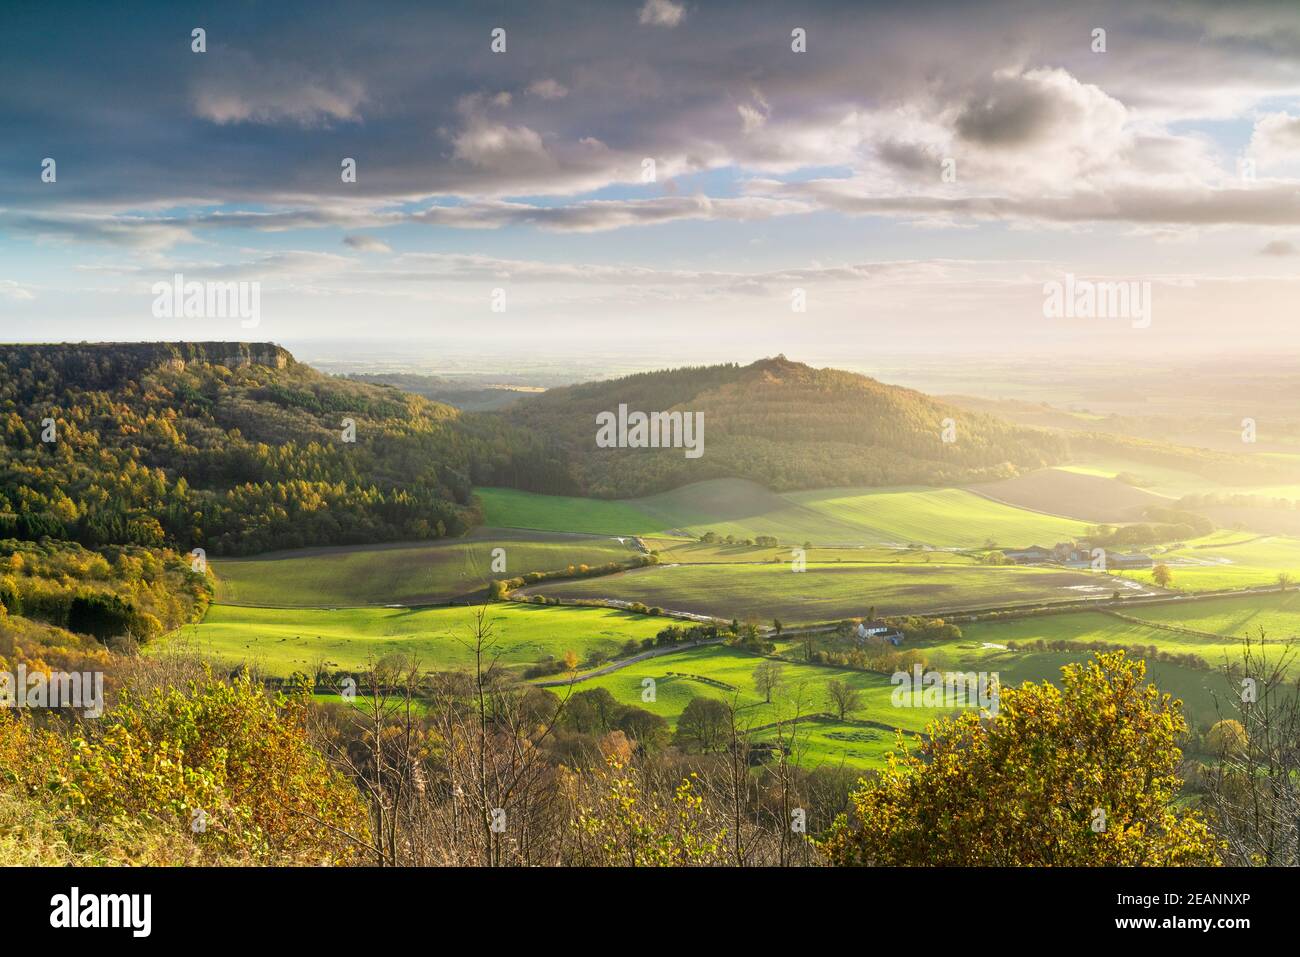 Météo et ciel spectaculaires sur la vallée de York depuis Sutton Bank, les North Yorkshire Moors, Yorkshire, Angleterre, Royaume-Uni, Europe Banque D'Images